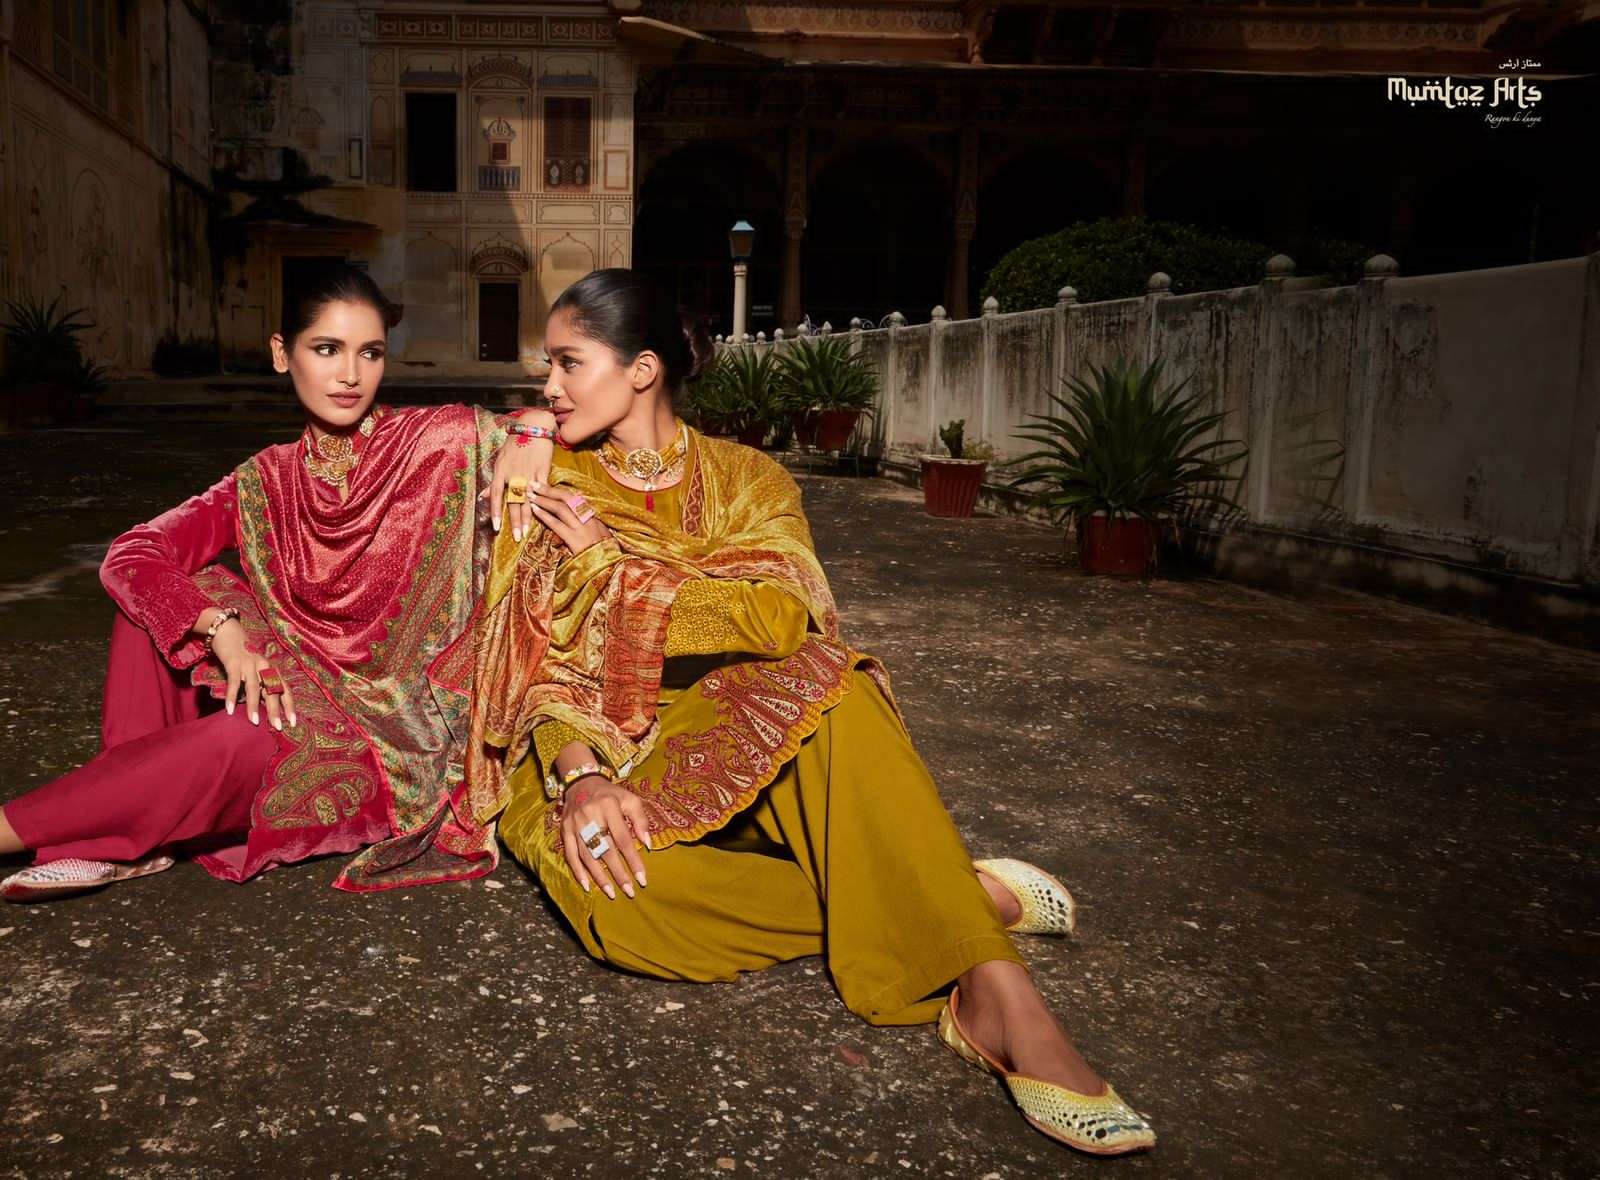 mumtaz arts the velvet soul 12001-12007 series pure velvet salwar suits collection surat